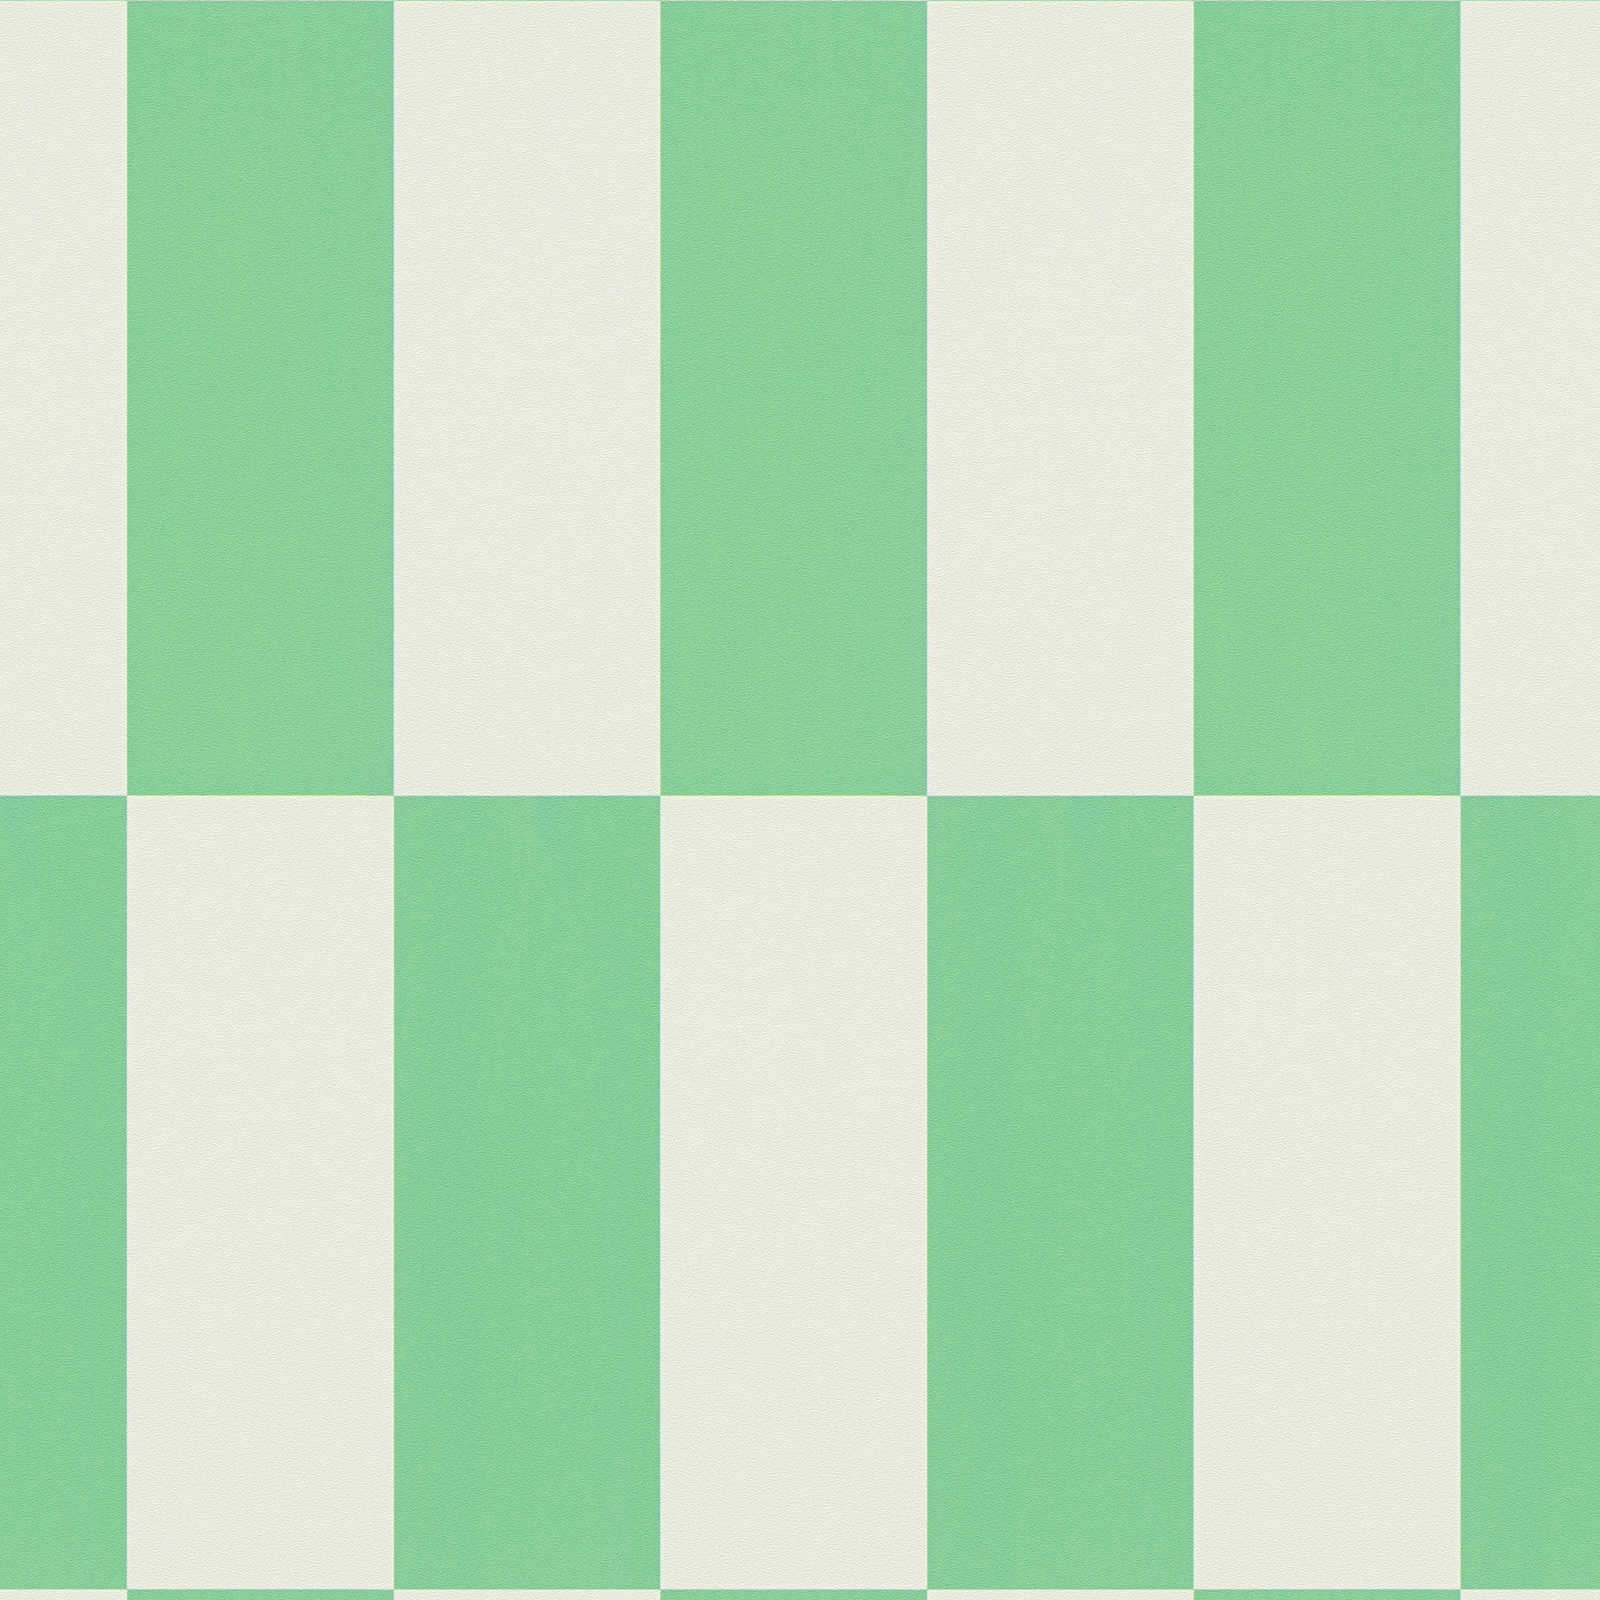             Patroonbehang met vierkantjes grafisch patroon - groen, wit
        